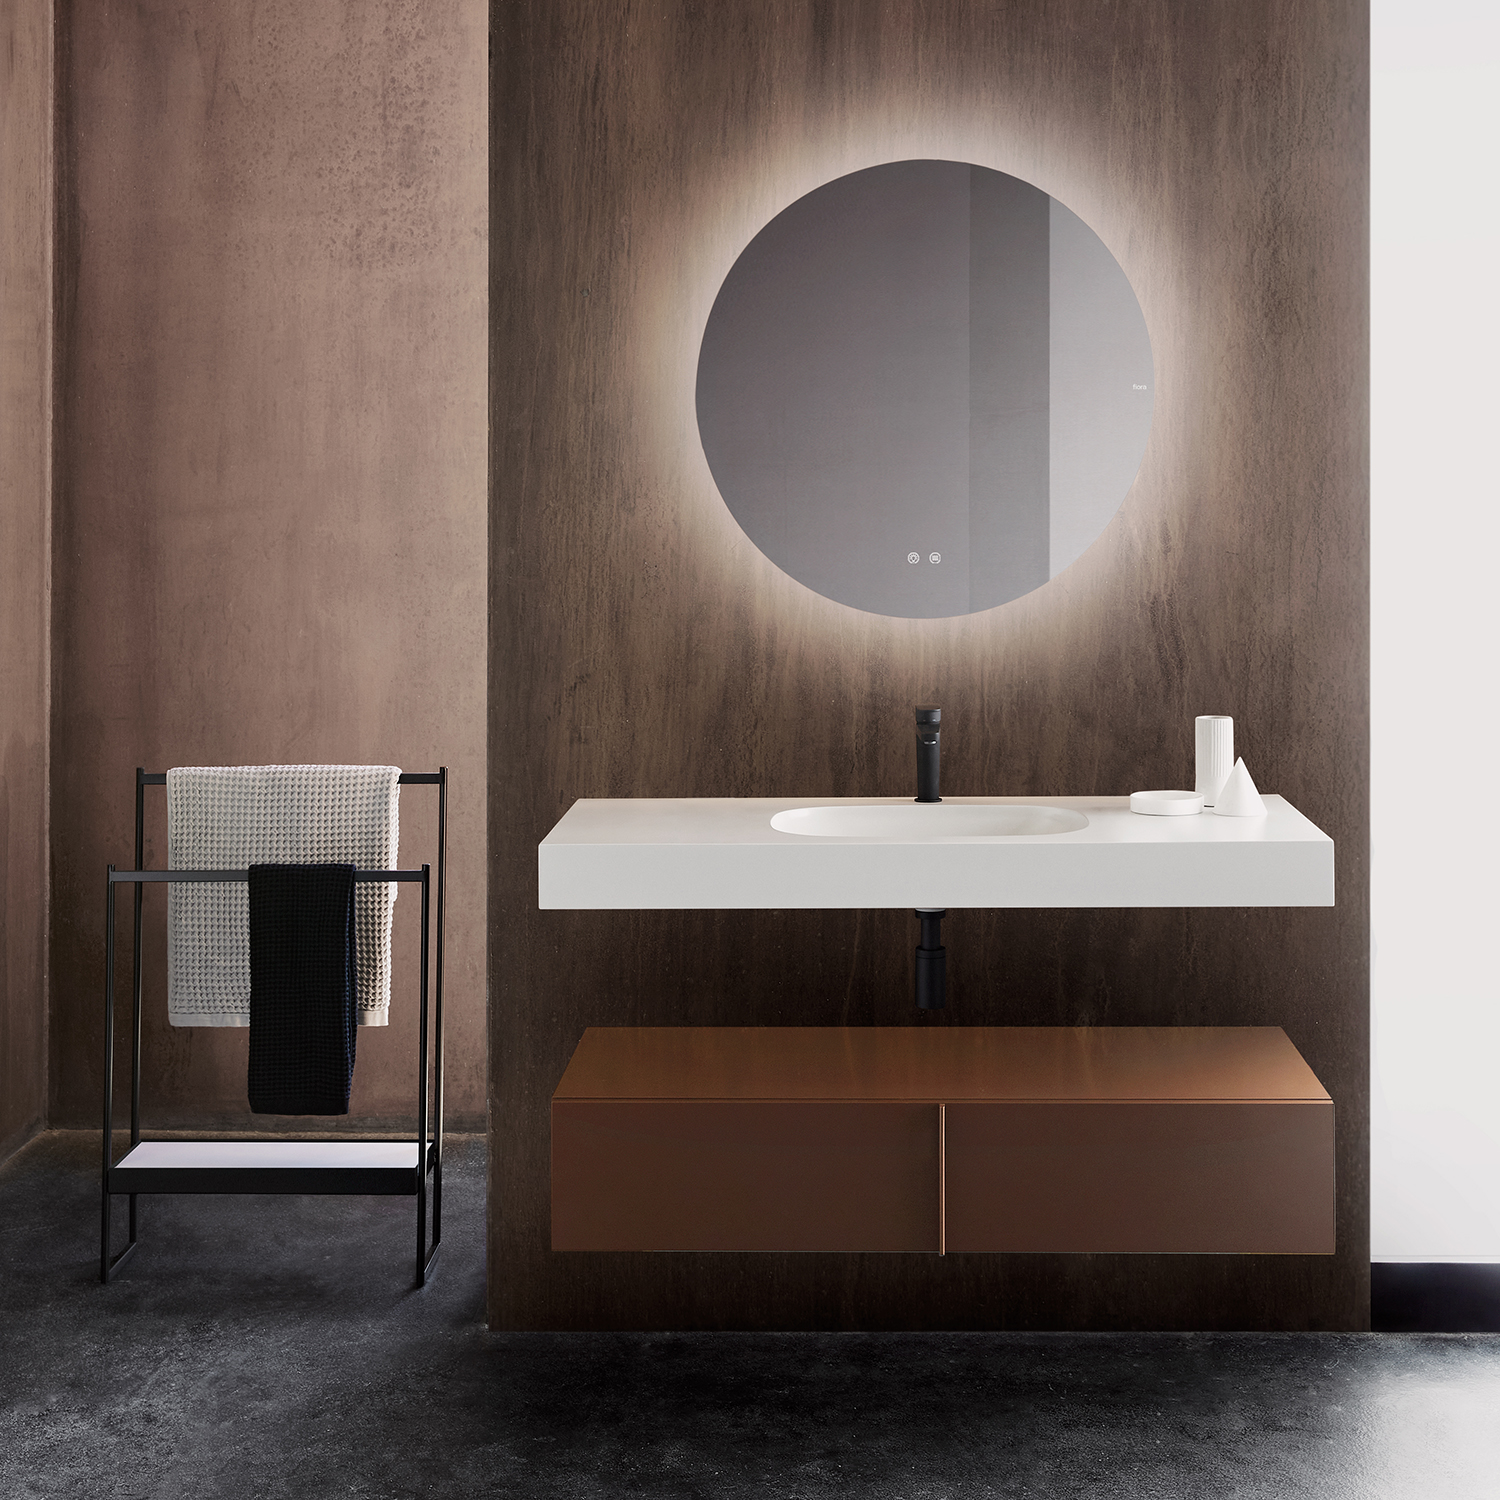 Sen Bathroom Collection by Mario Ruiz for Fiora